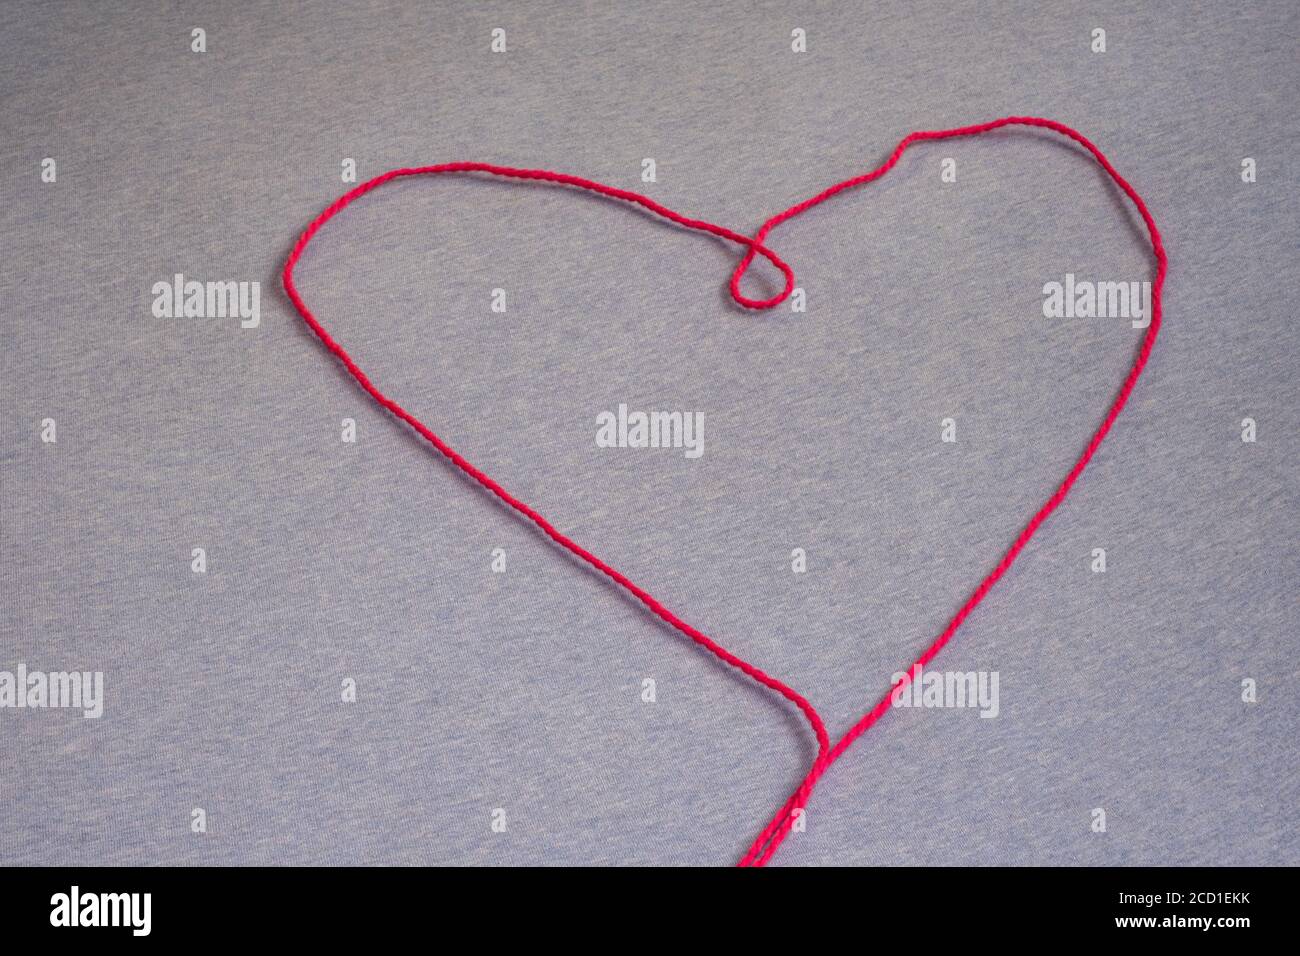 Un unico filo di filo rosa forma la forma di un cuore, disposto su una superficie piana del tessuto. Foto Stock